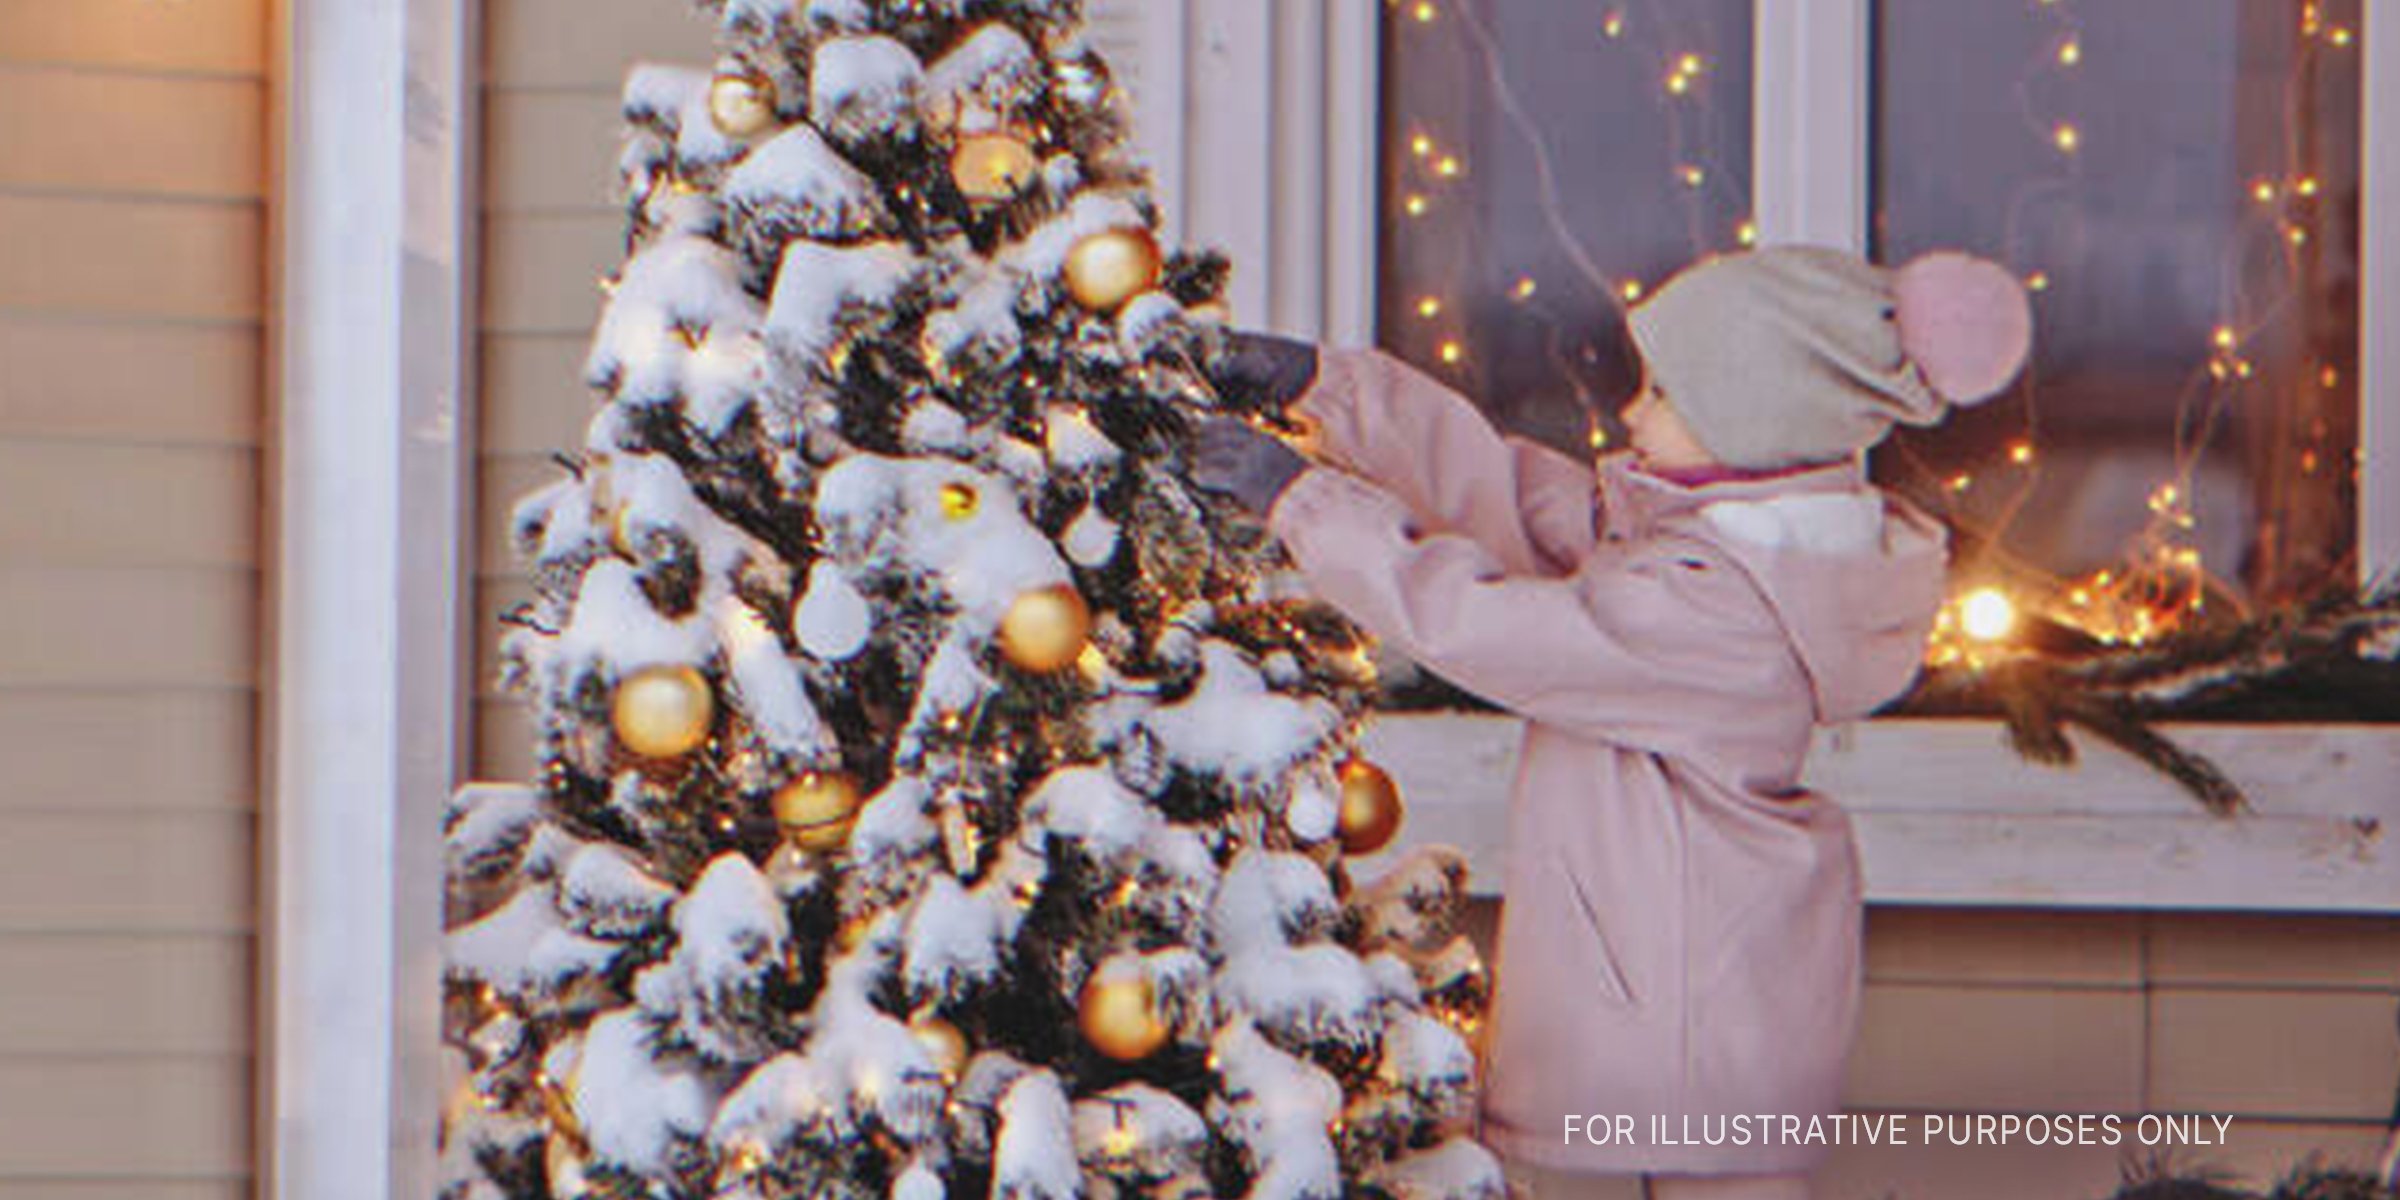 Kleines Mädchen schmückt einen Weihnachtsbaum. | Quelle: Shutterstock